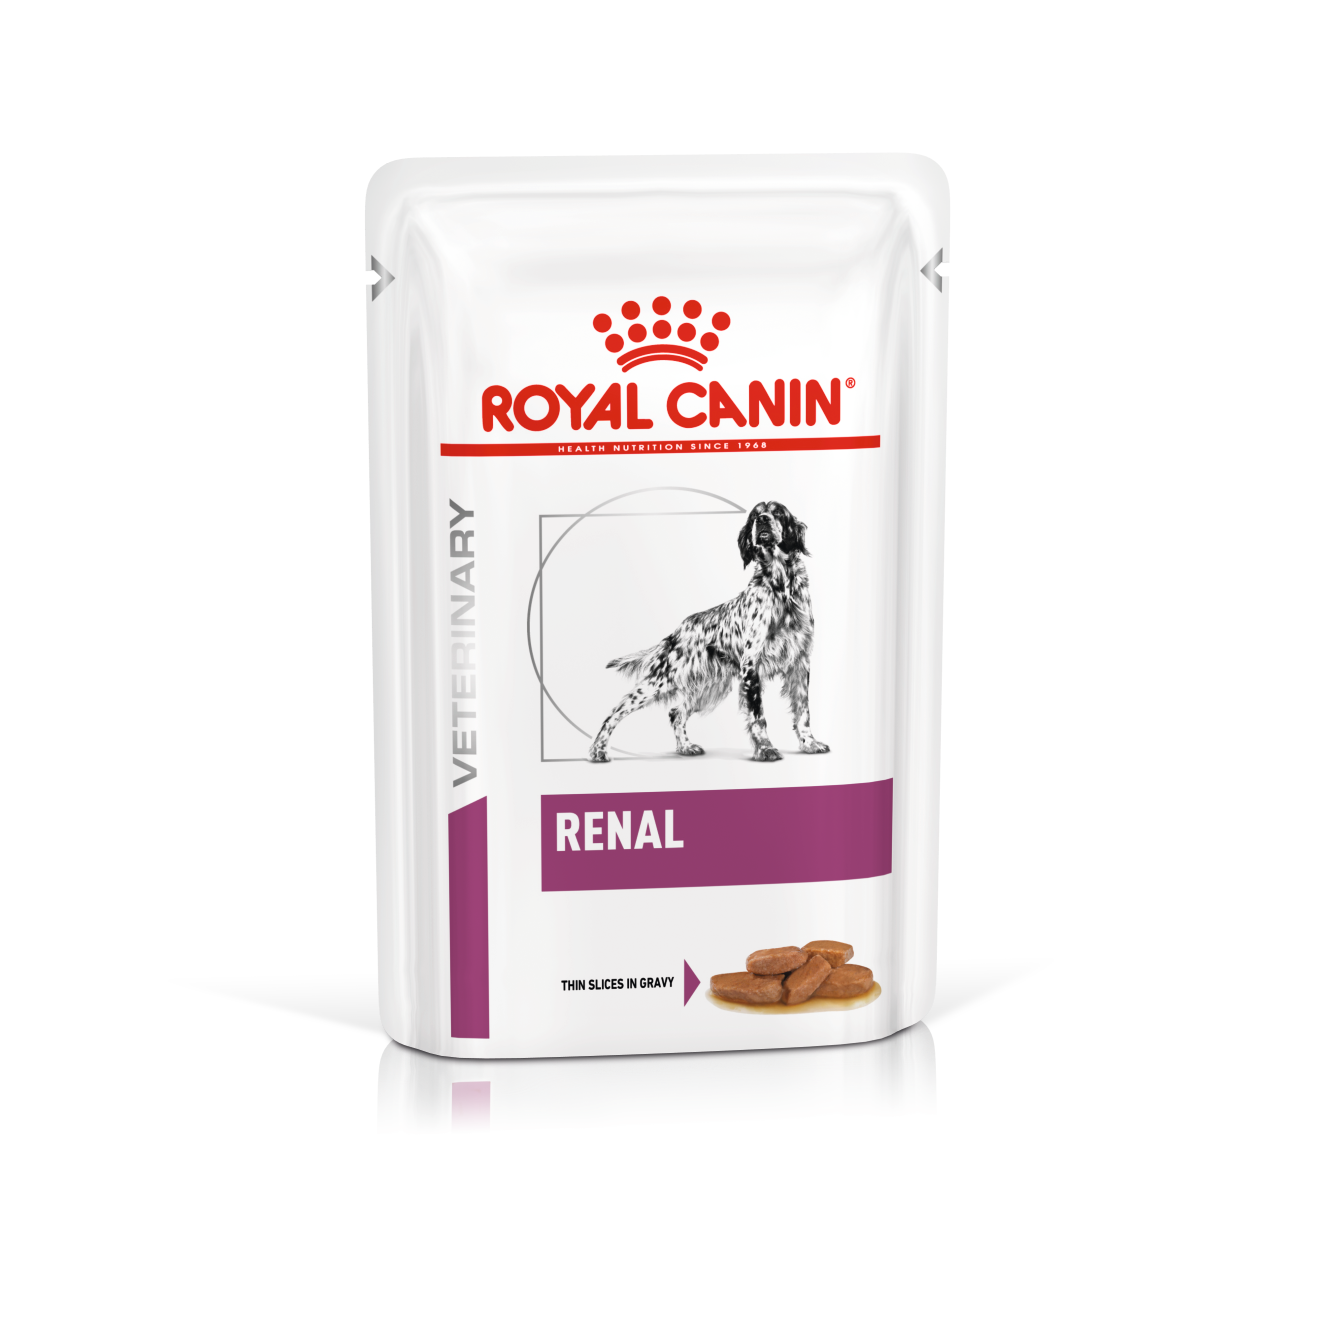 Royal Canin Renal hond  12x 100 gram Portie/maaltijdzakjes